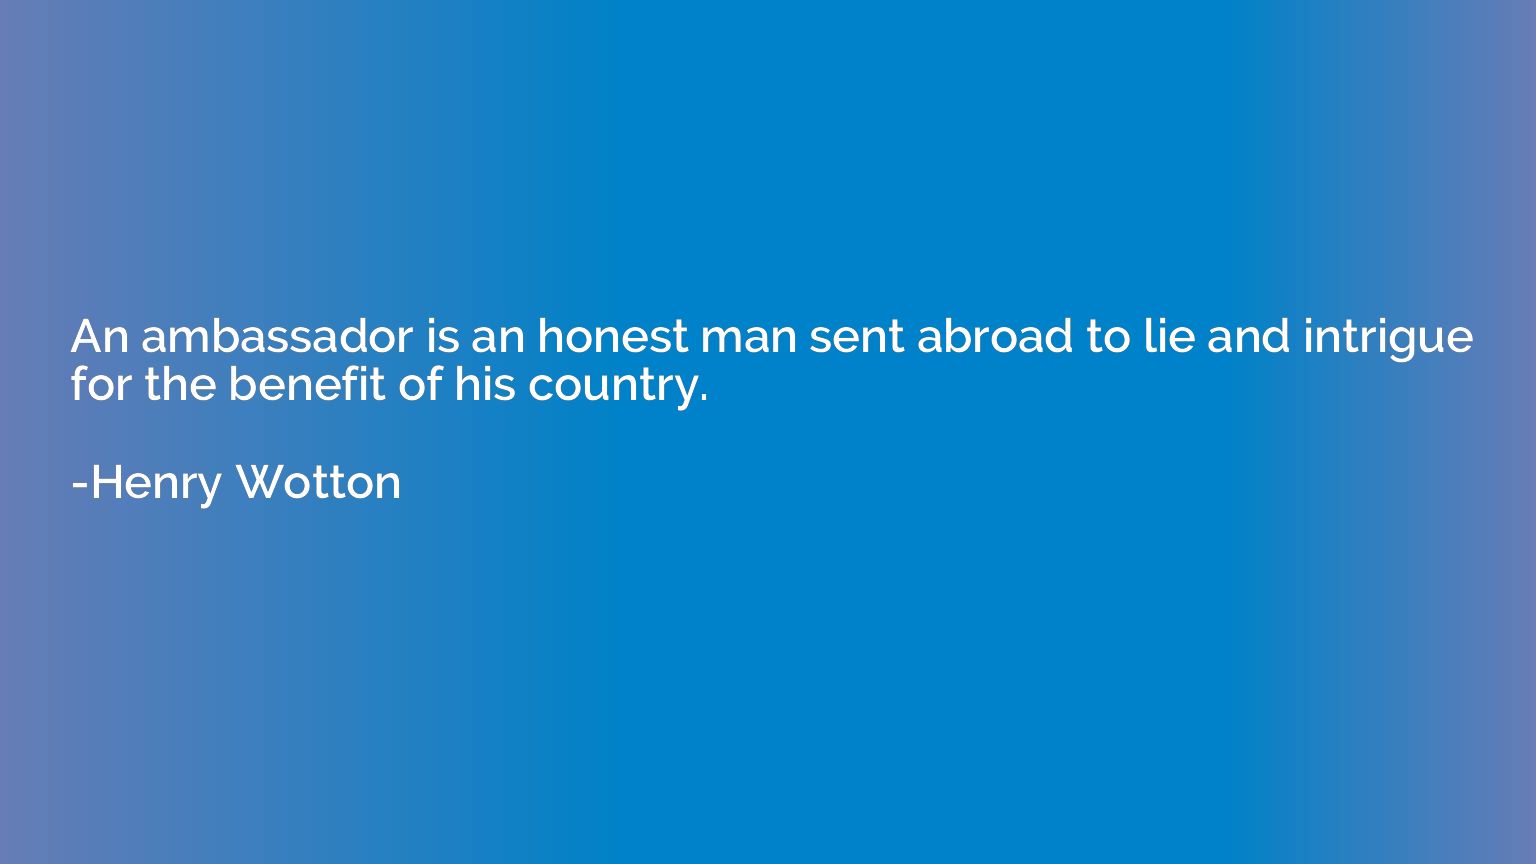 An ambassador is an honest man sent abroad to lie and intrig